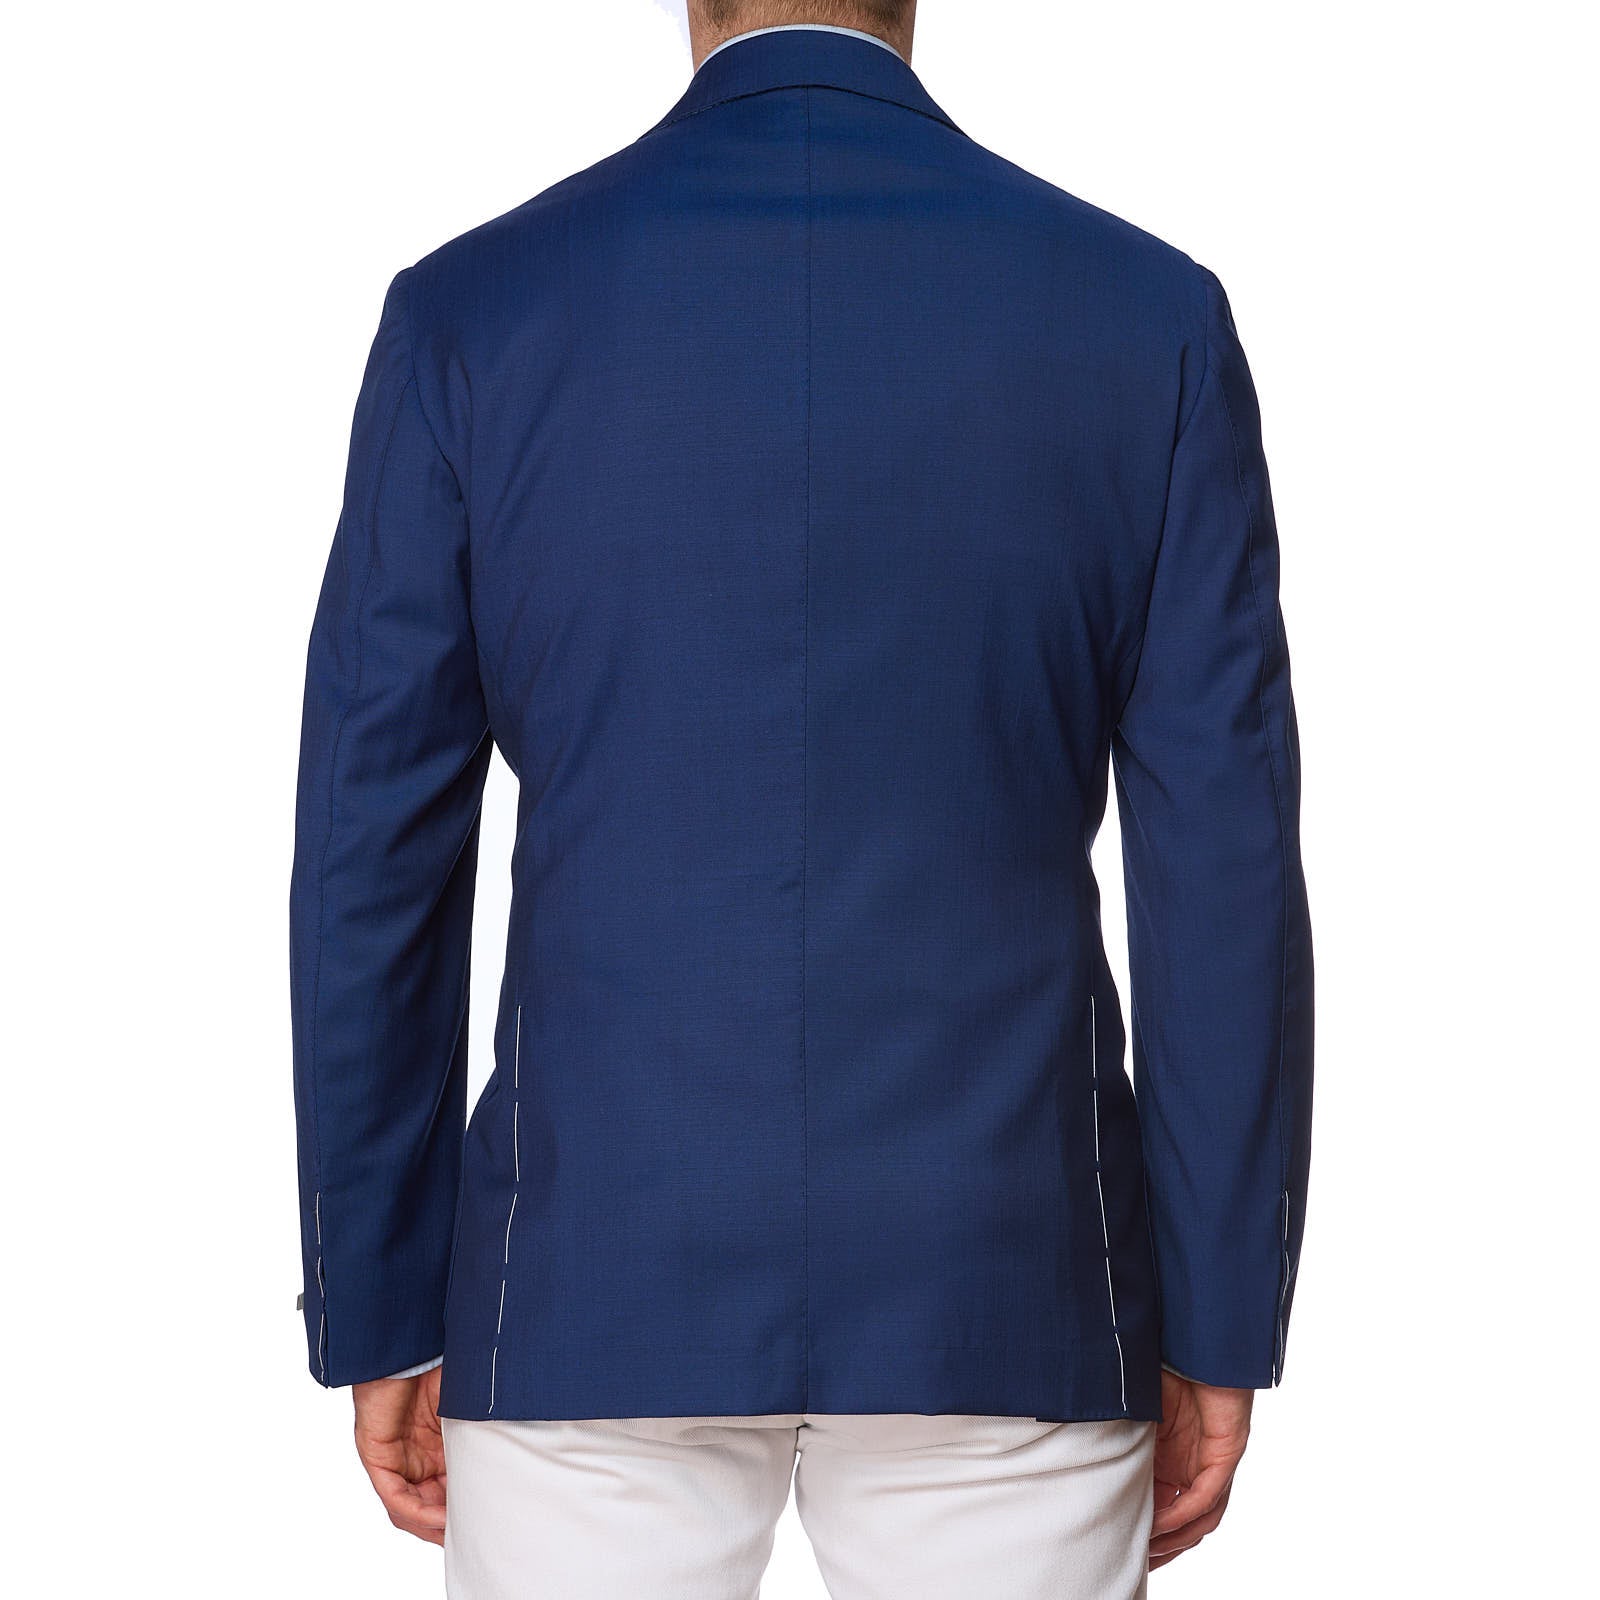 MAURO BLASI x VANNUCCI Handmade Blue Wool Jacket Blazer EU 54 NEW US 44